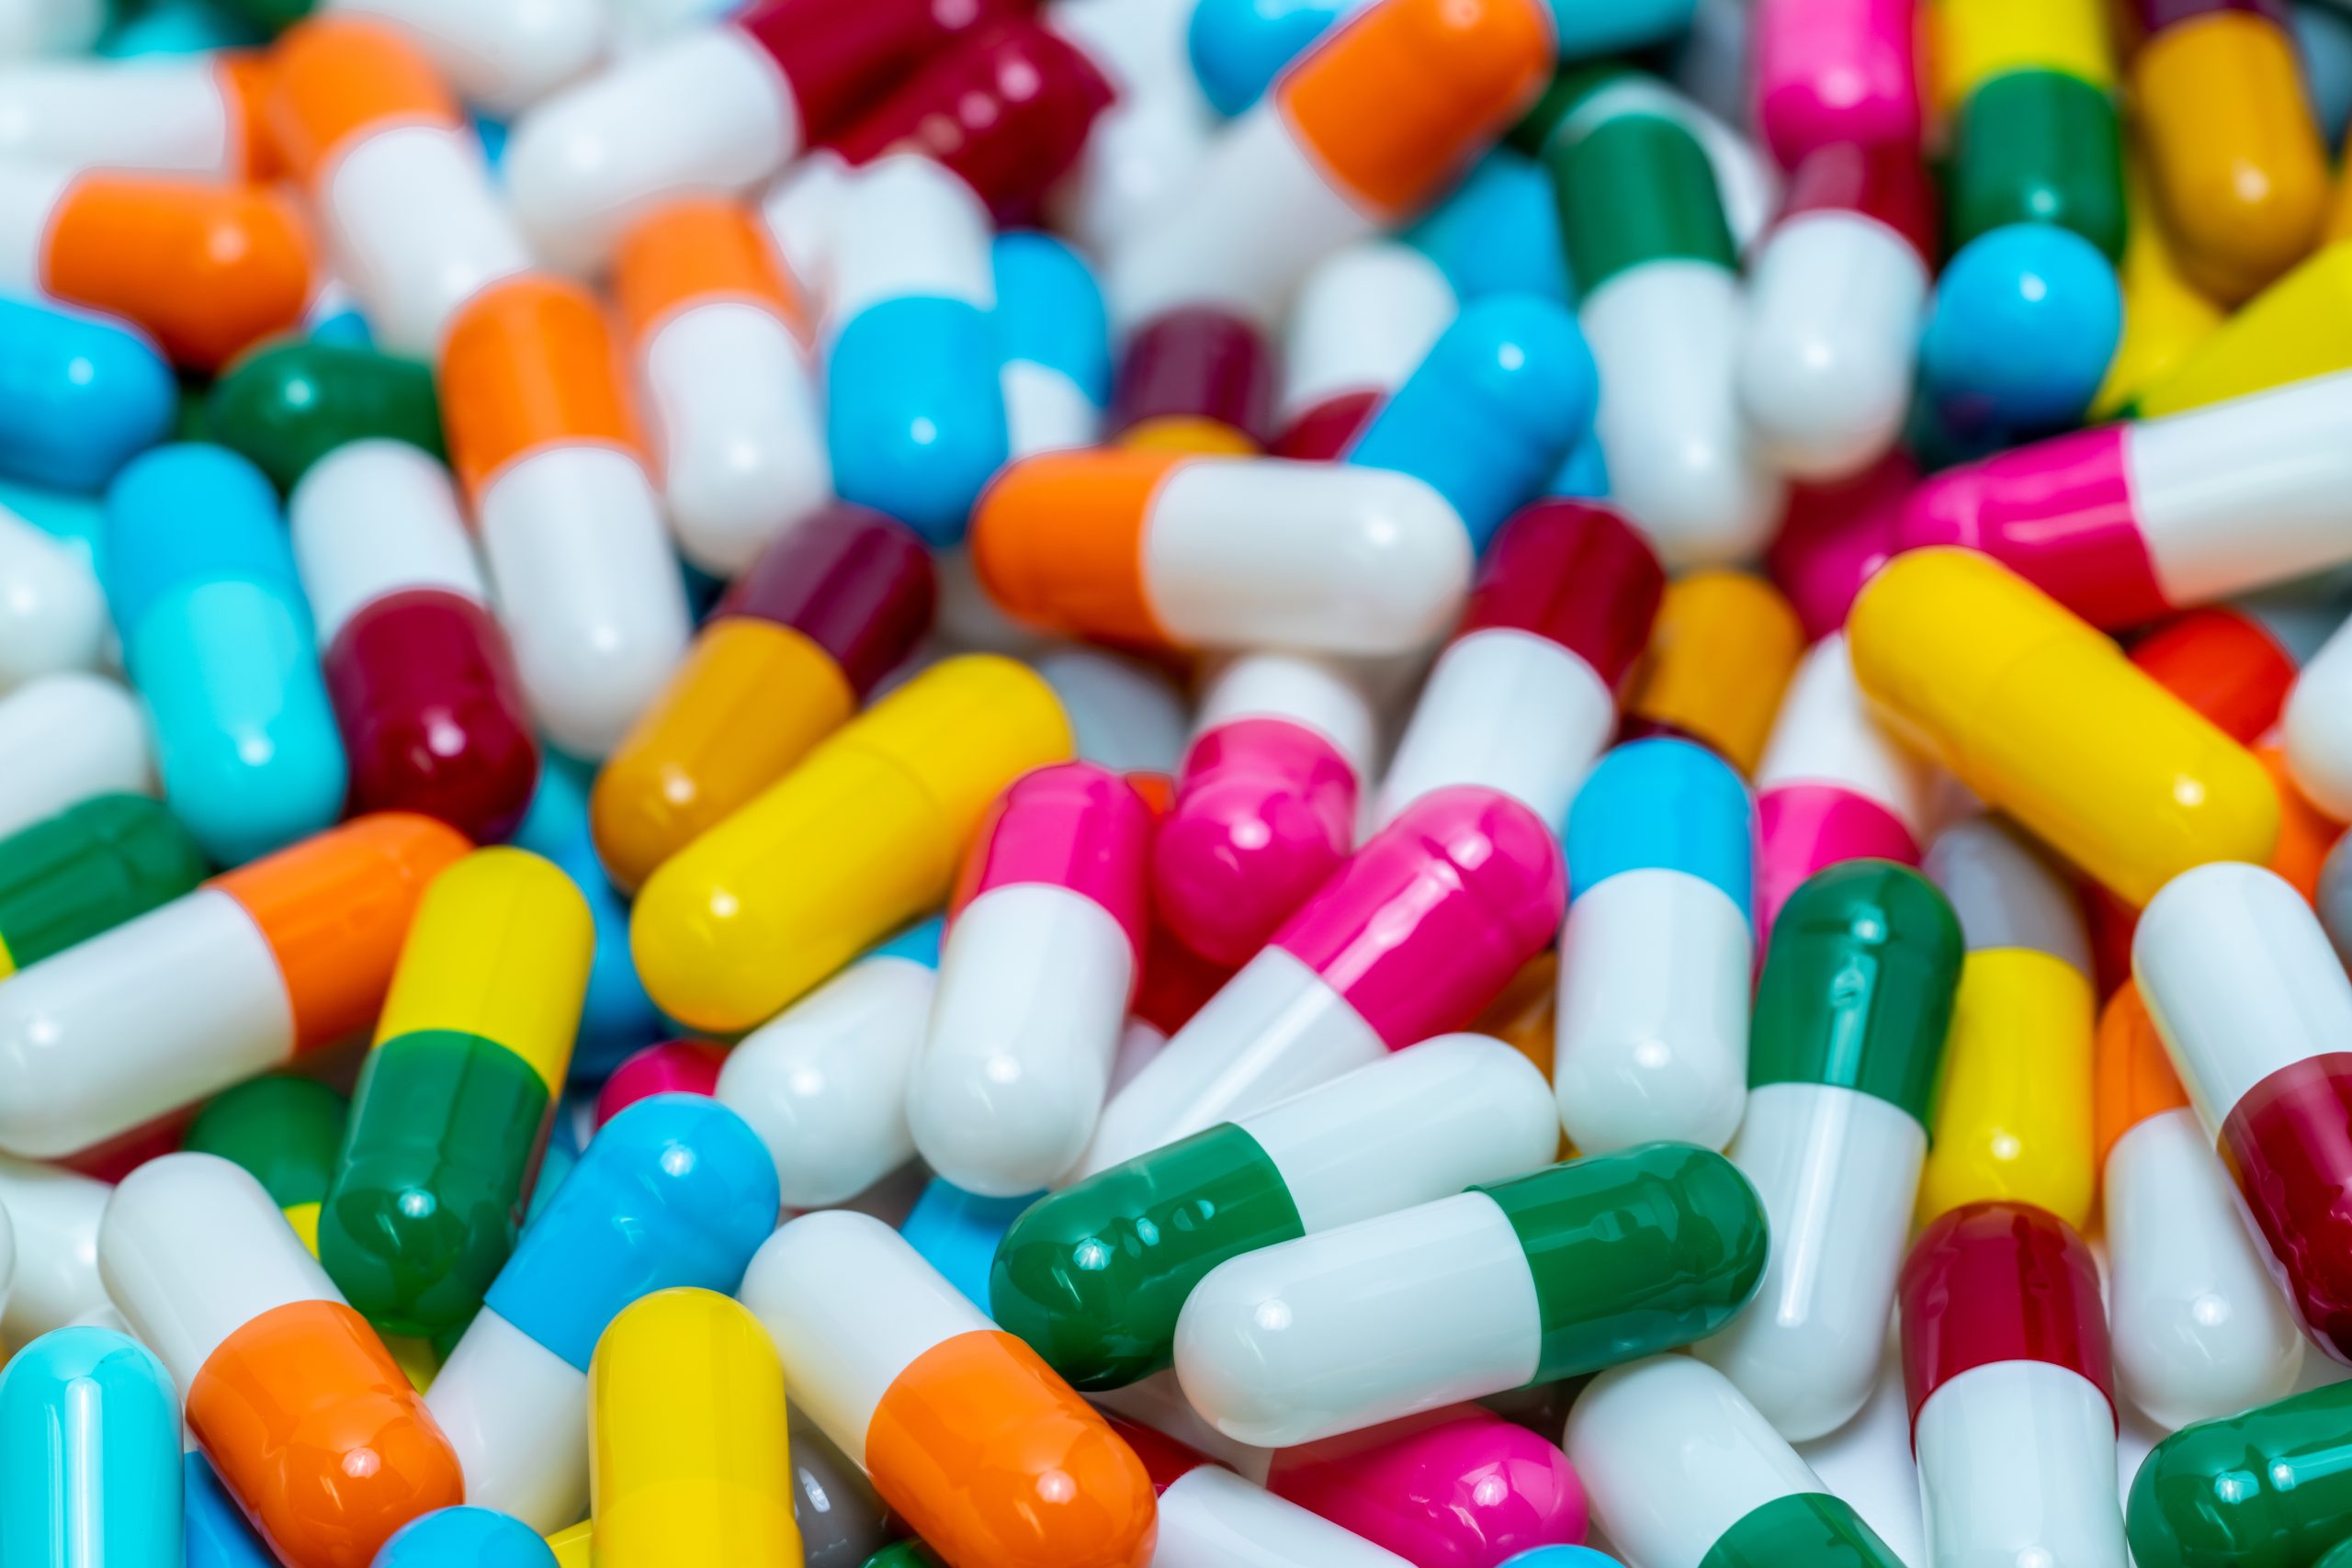 Antibiotic pills